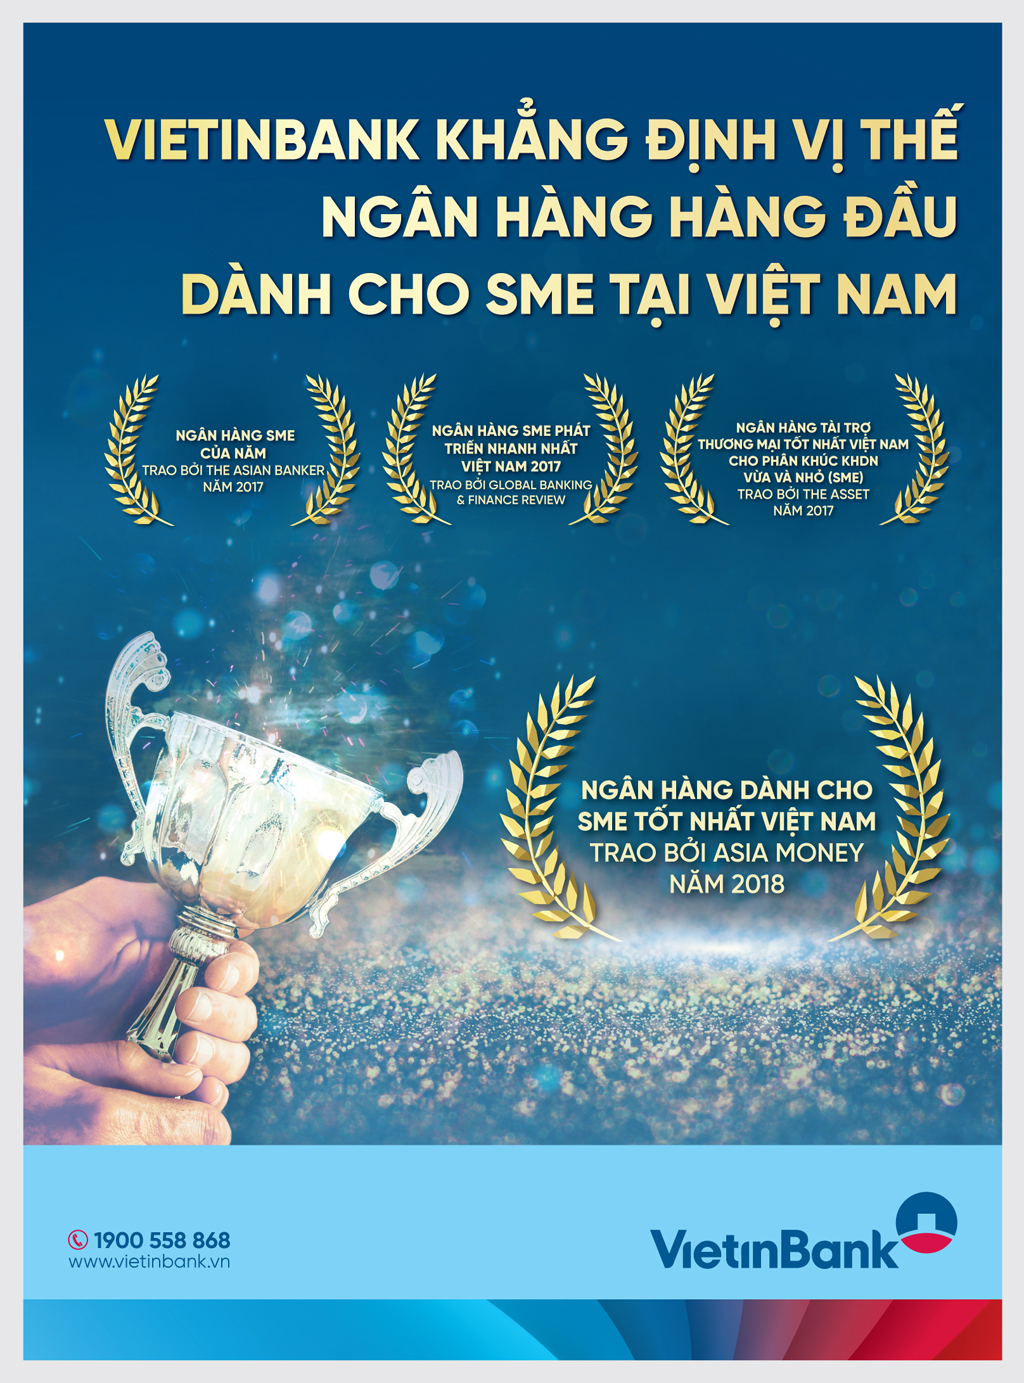 VietinBank vinh dự nhận giải thưởng “Ngân hàng dành cho SME tốt bậc nhất Việt Nam”